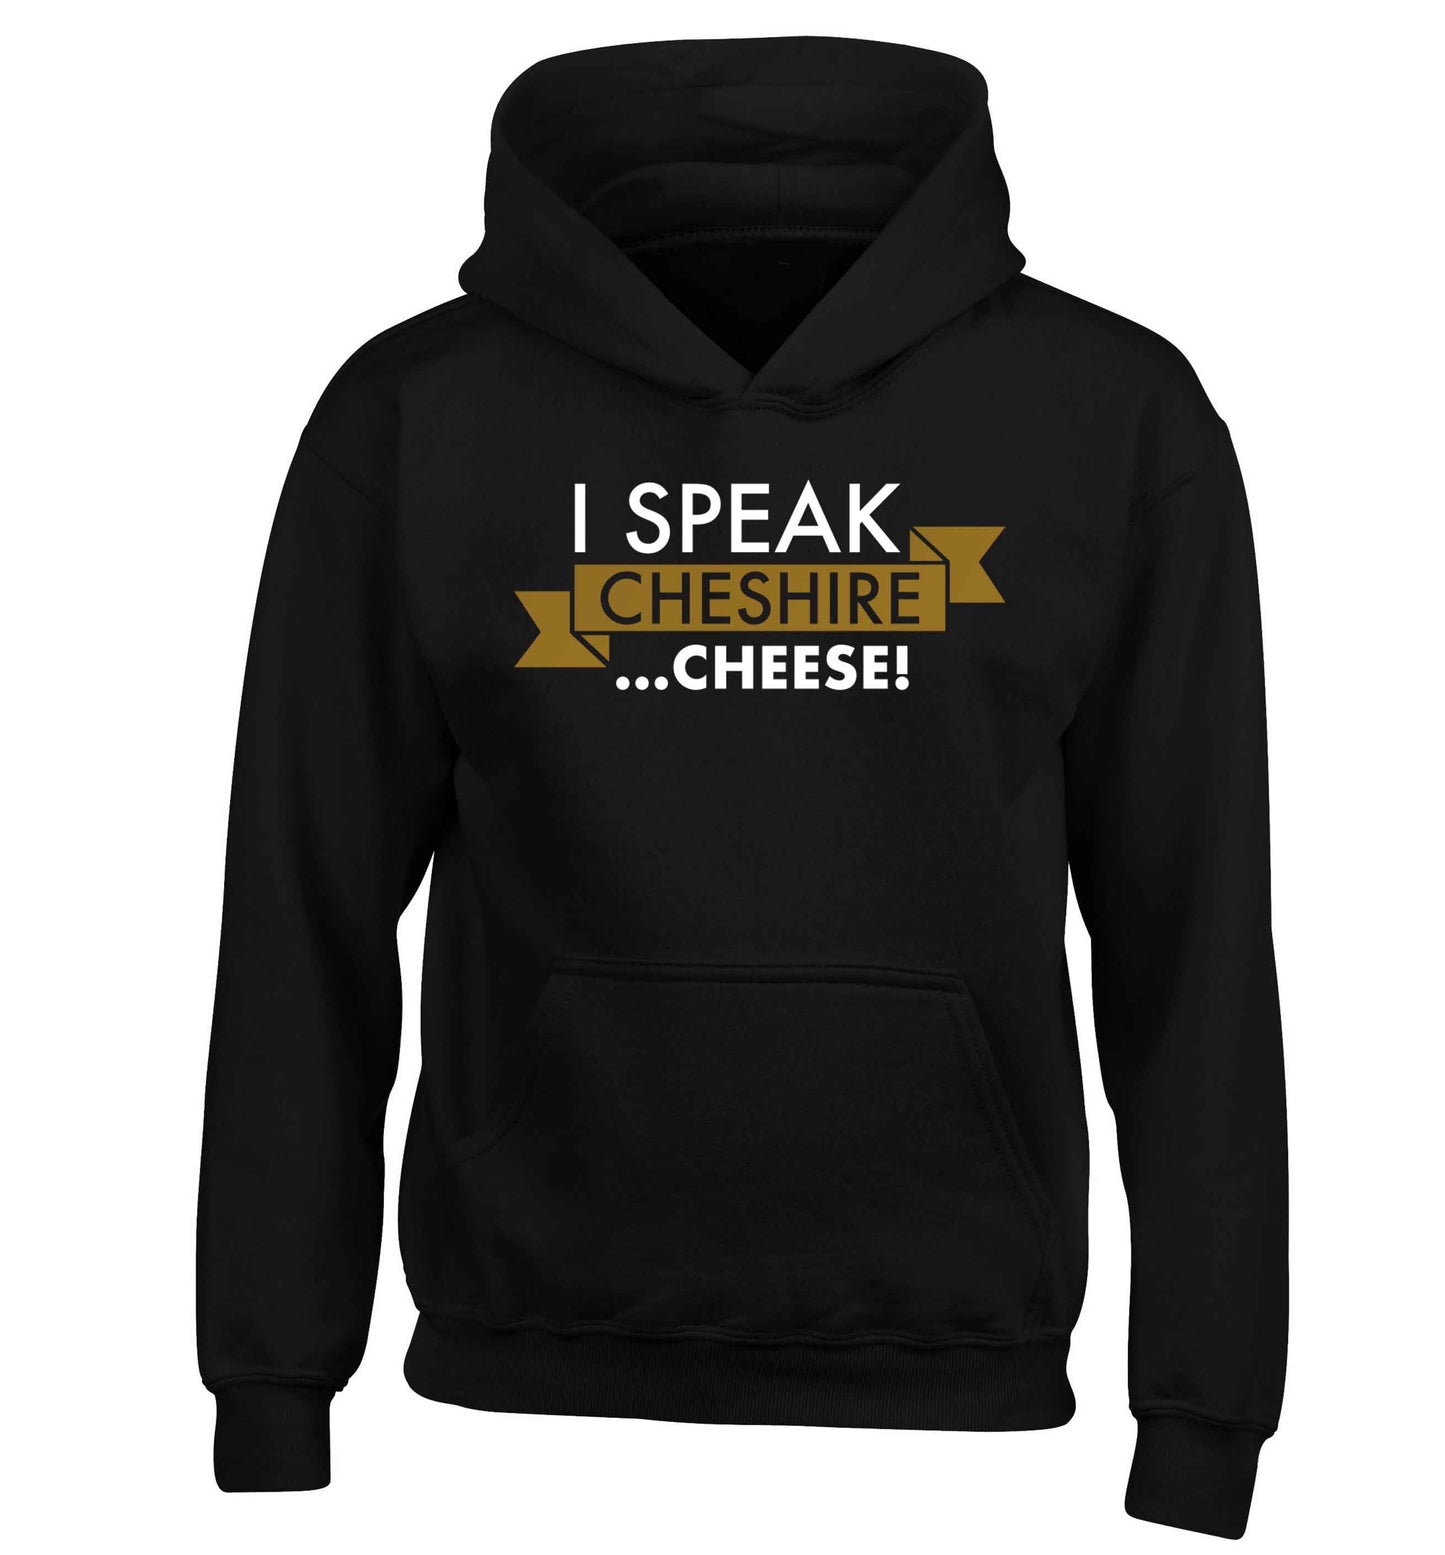 I speak Cheshire cheese children's black hoodie 12-13 Years